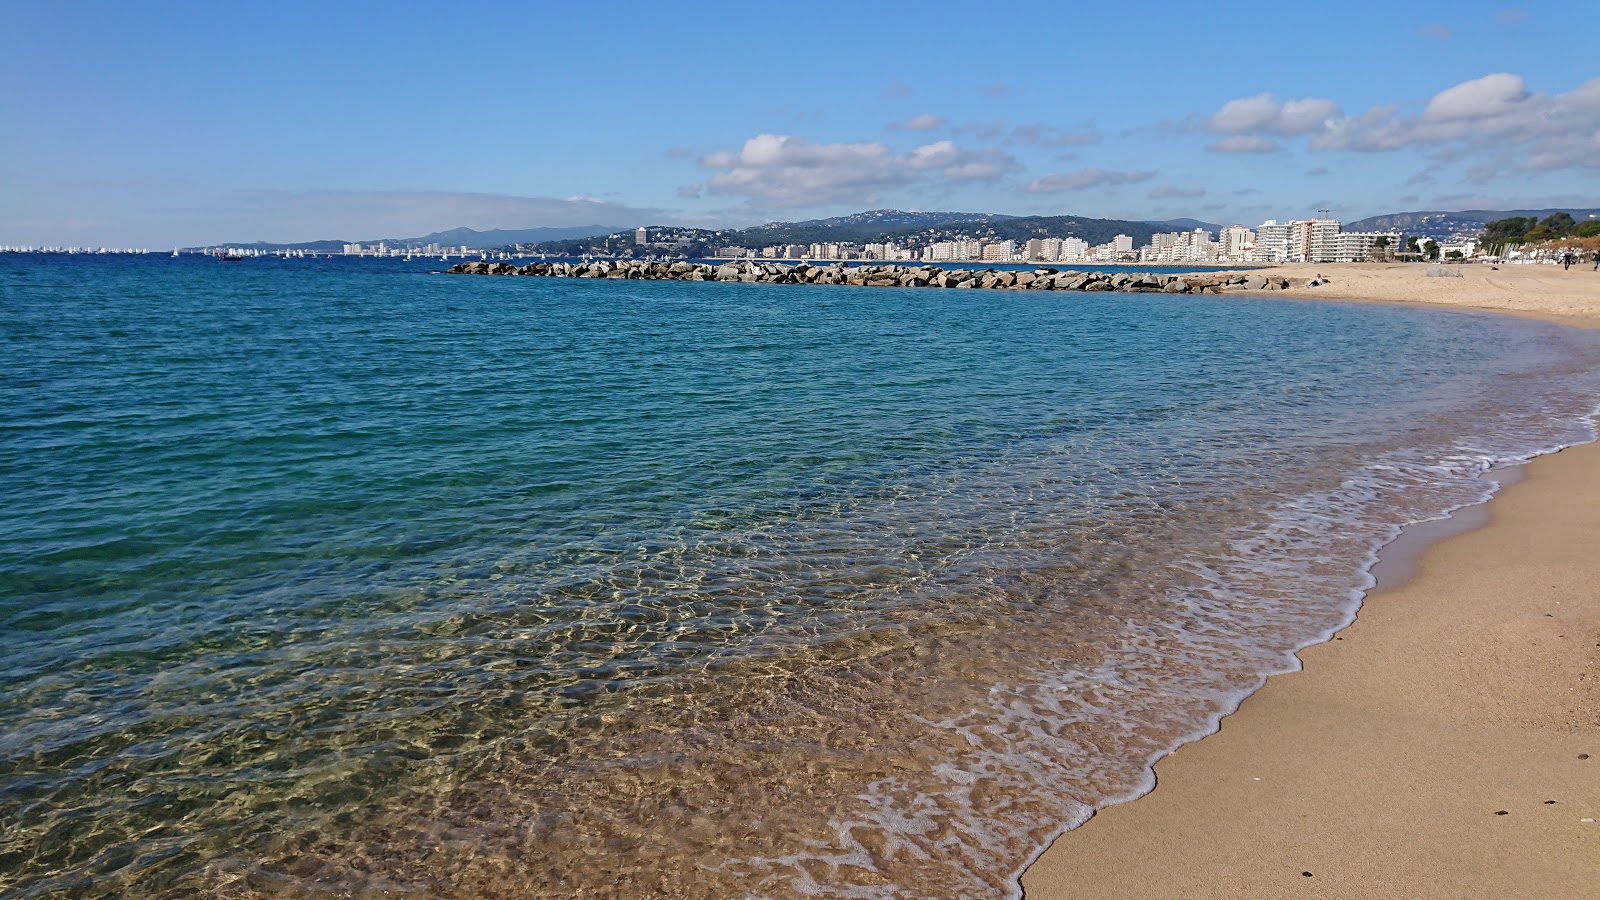 Palamos Plajı'in fotoğrafı parlak kum yüzey ile